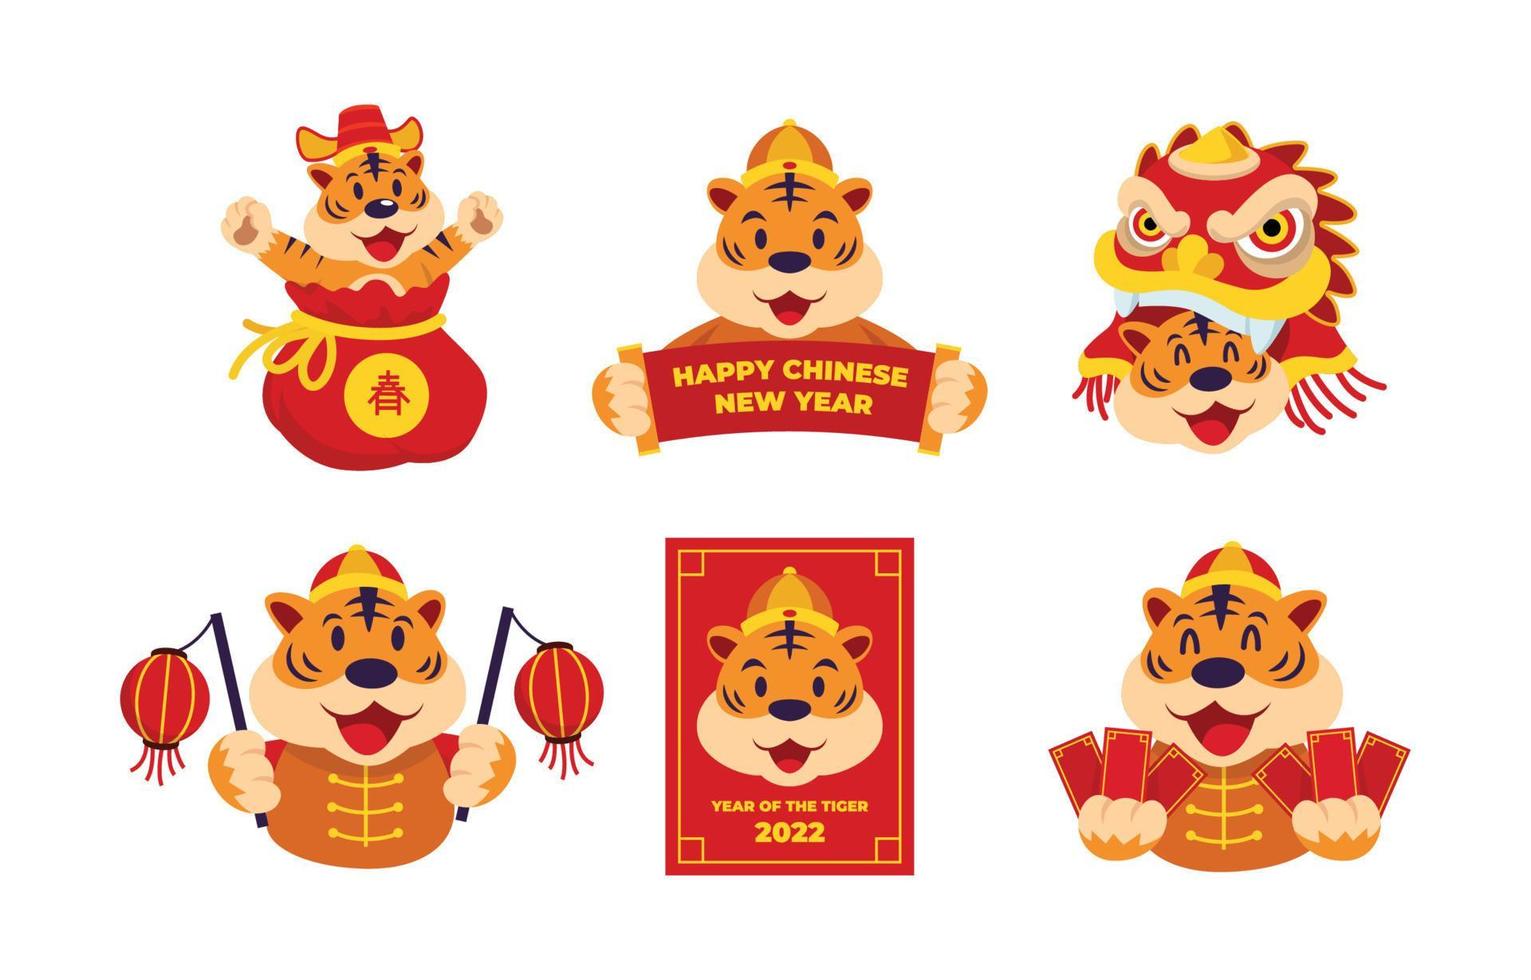 Jahr des Tigers Chinesisches Neujahr Aufkleberset vektor